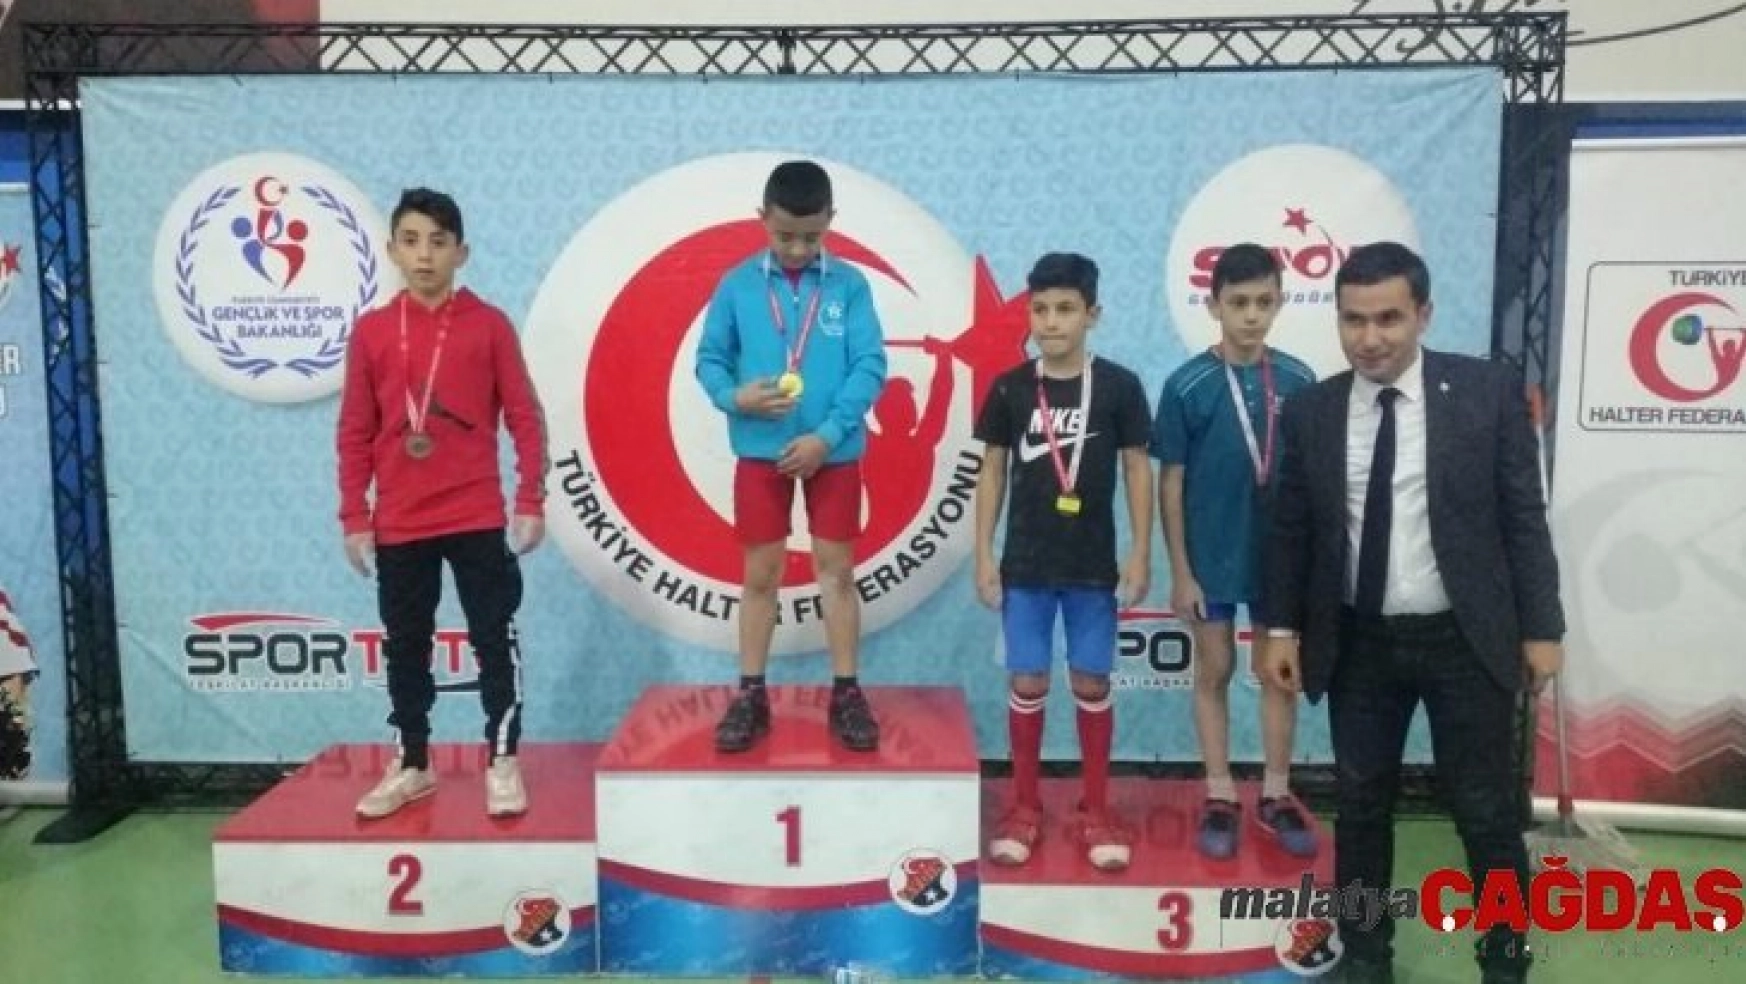 Uşaklı öğrenci 'Halter Şampiyonası'nda' Türkiye 2. oldu